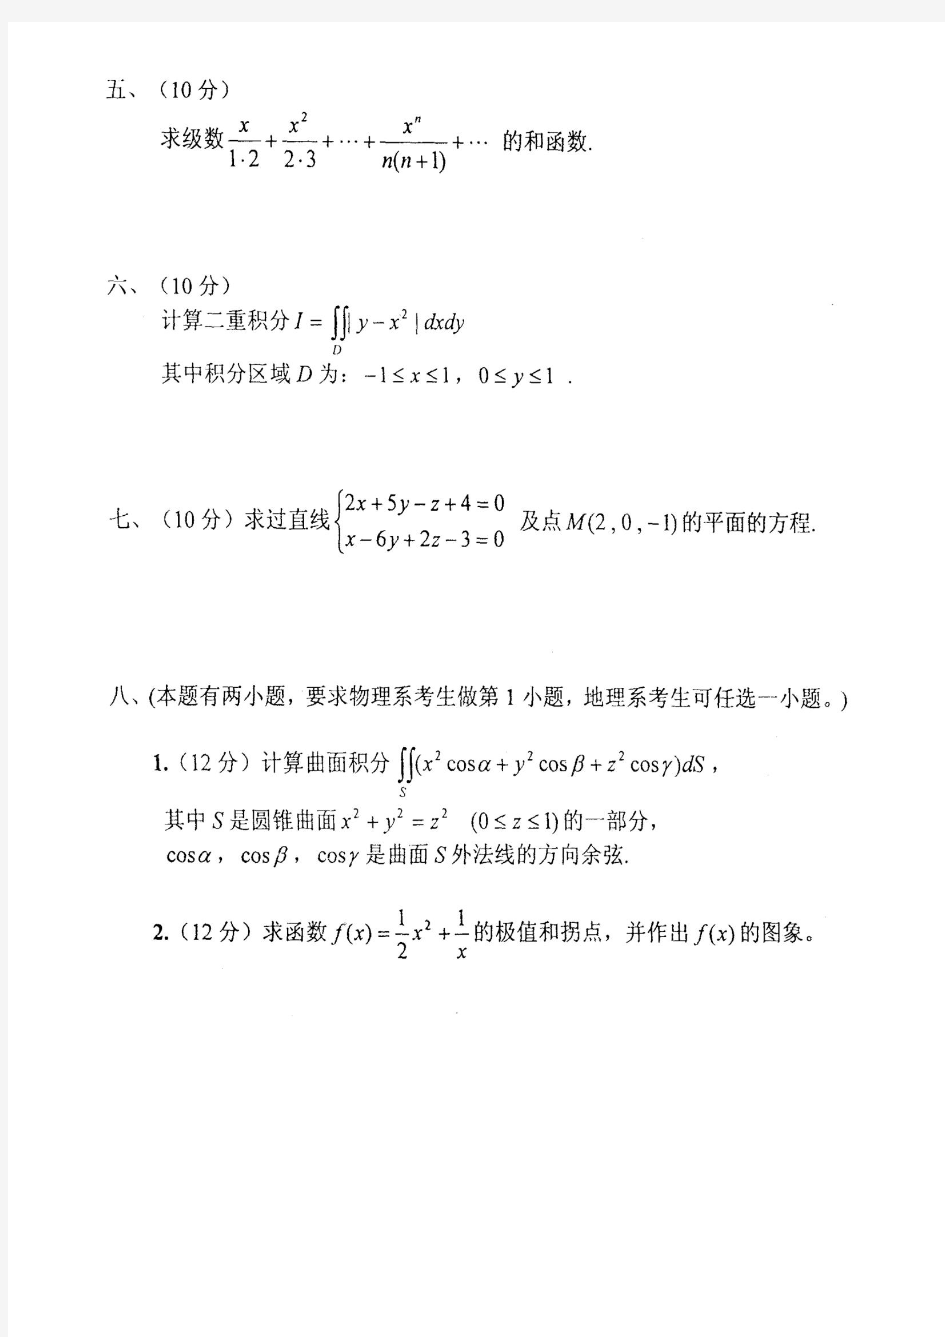 首师大-高等数学(通用)-考研真题(2001-2013年)